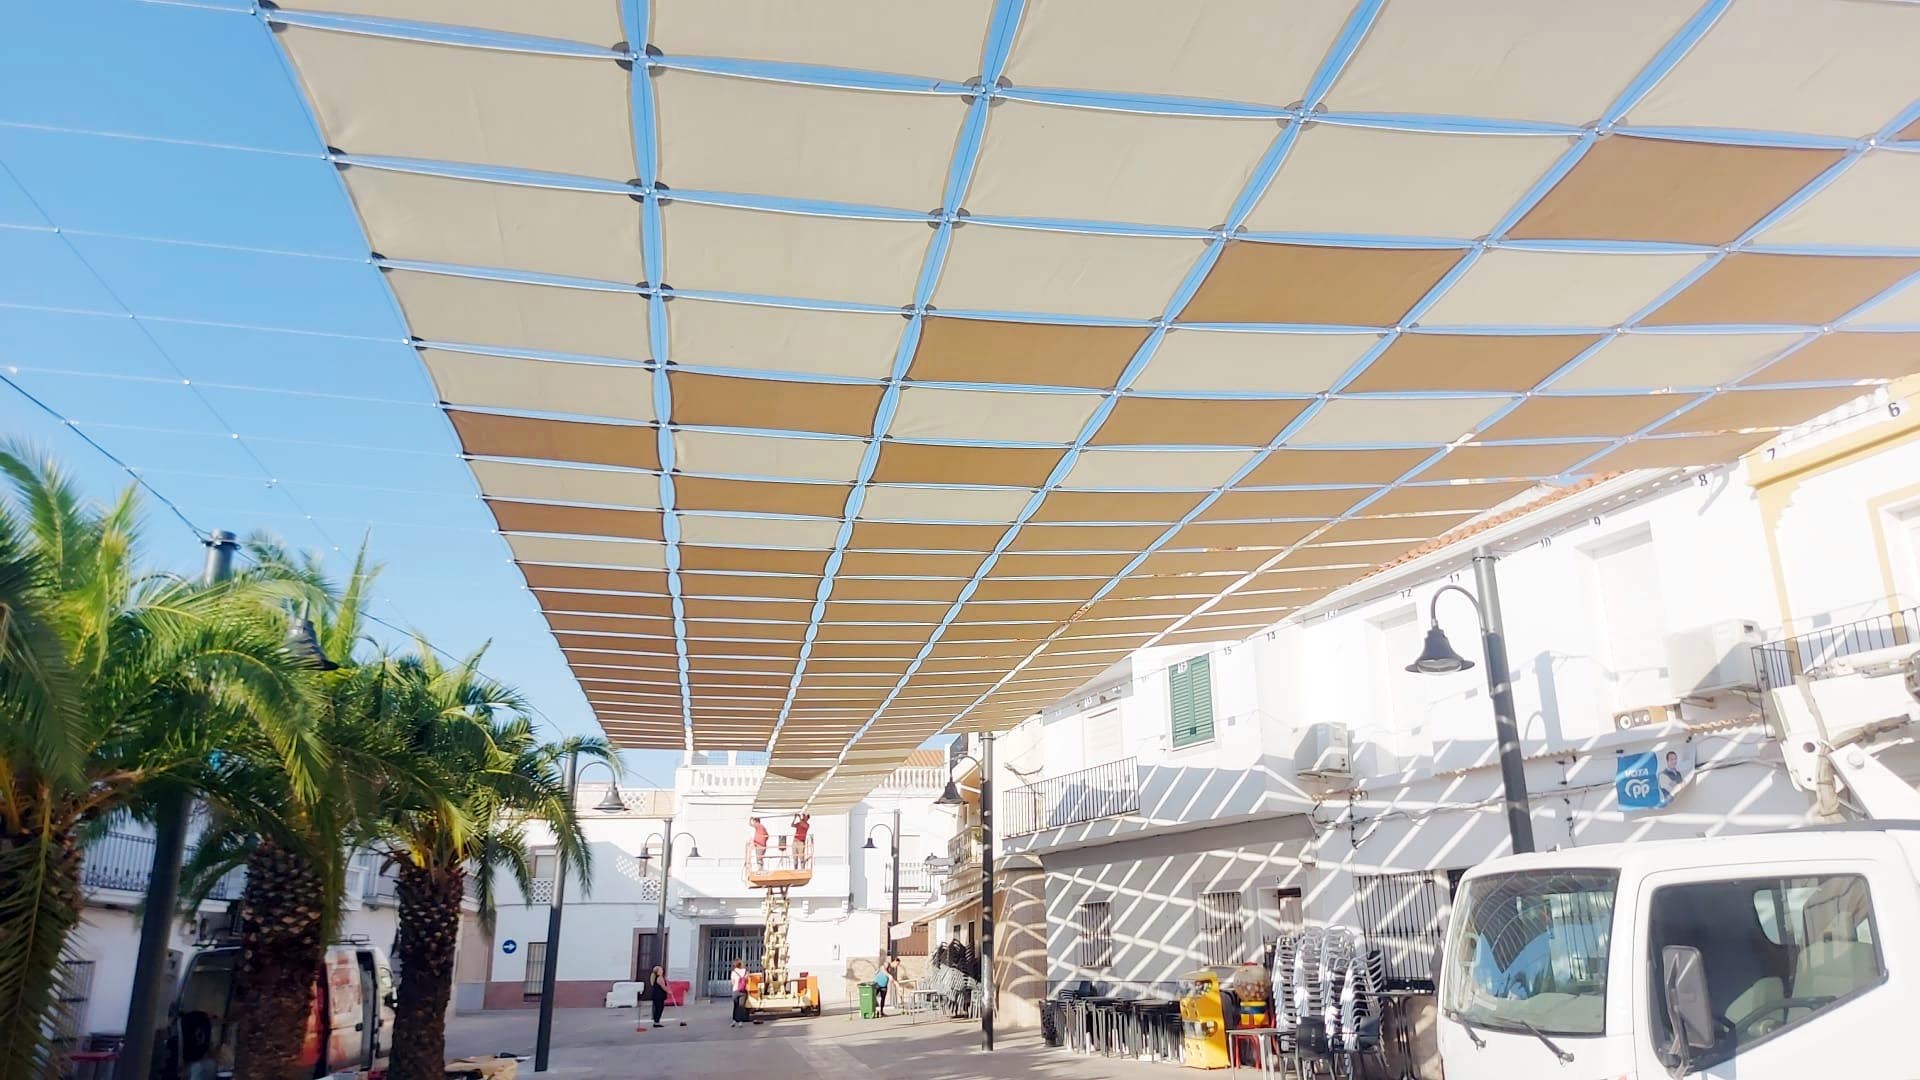 Licitación: Entoldado plaza en Cheles, Badajoz. Diseño y aplicación de sistema de entoldado para la plaza de la población.